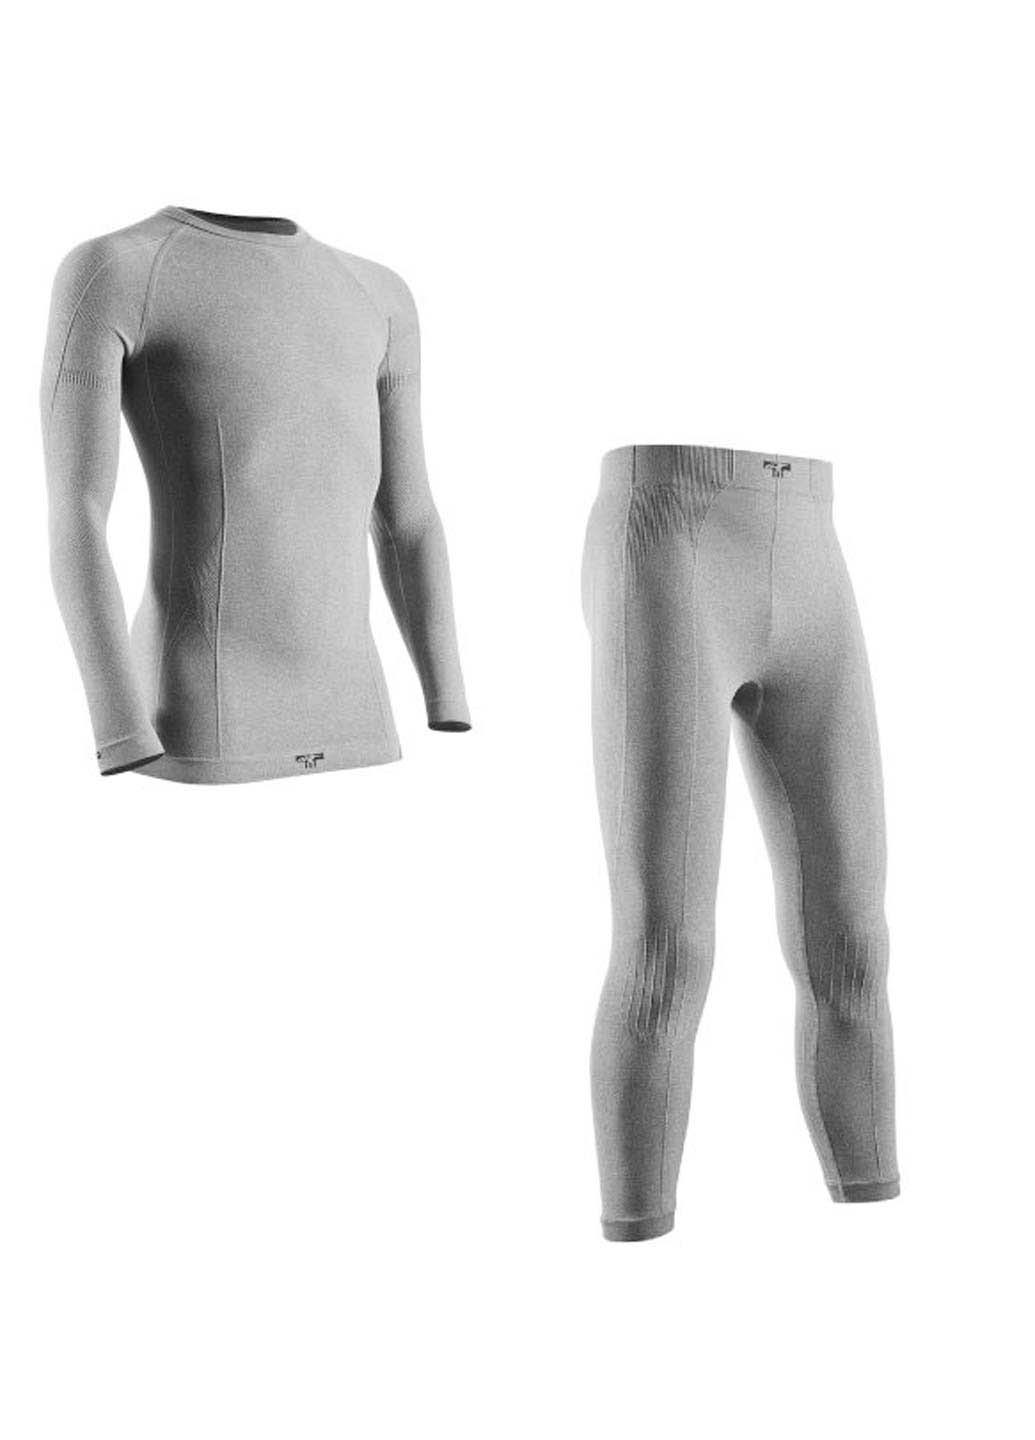 Комплект термобелья Tervel свитер + брюки однотонный серый спортивный